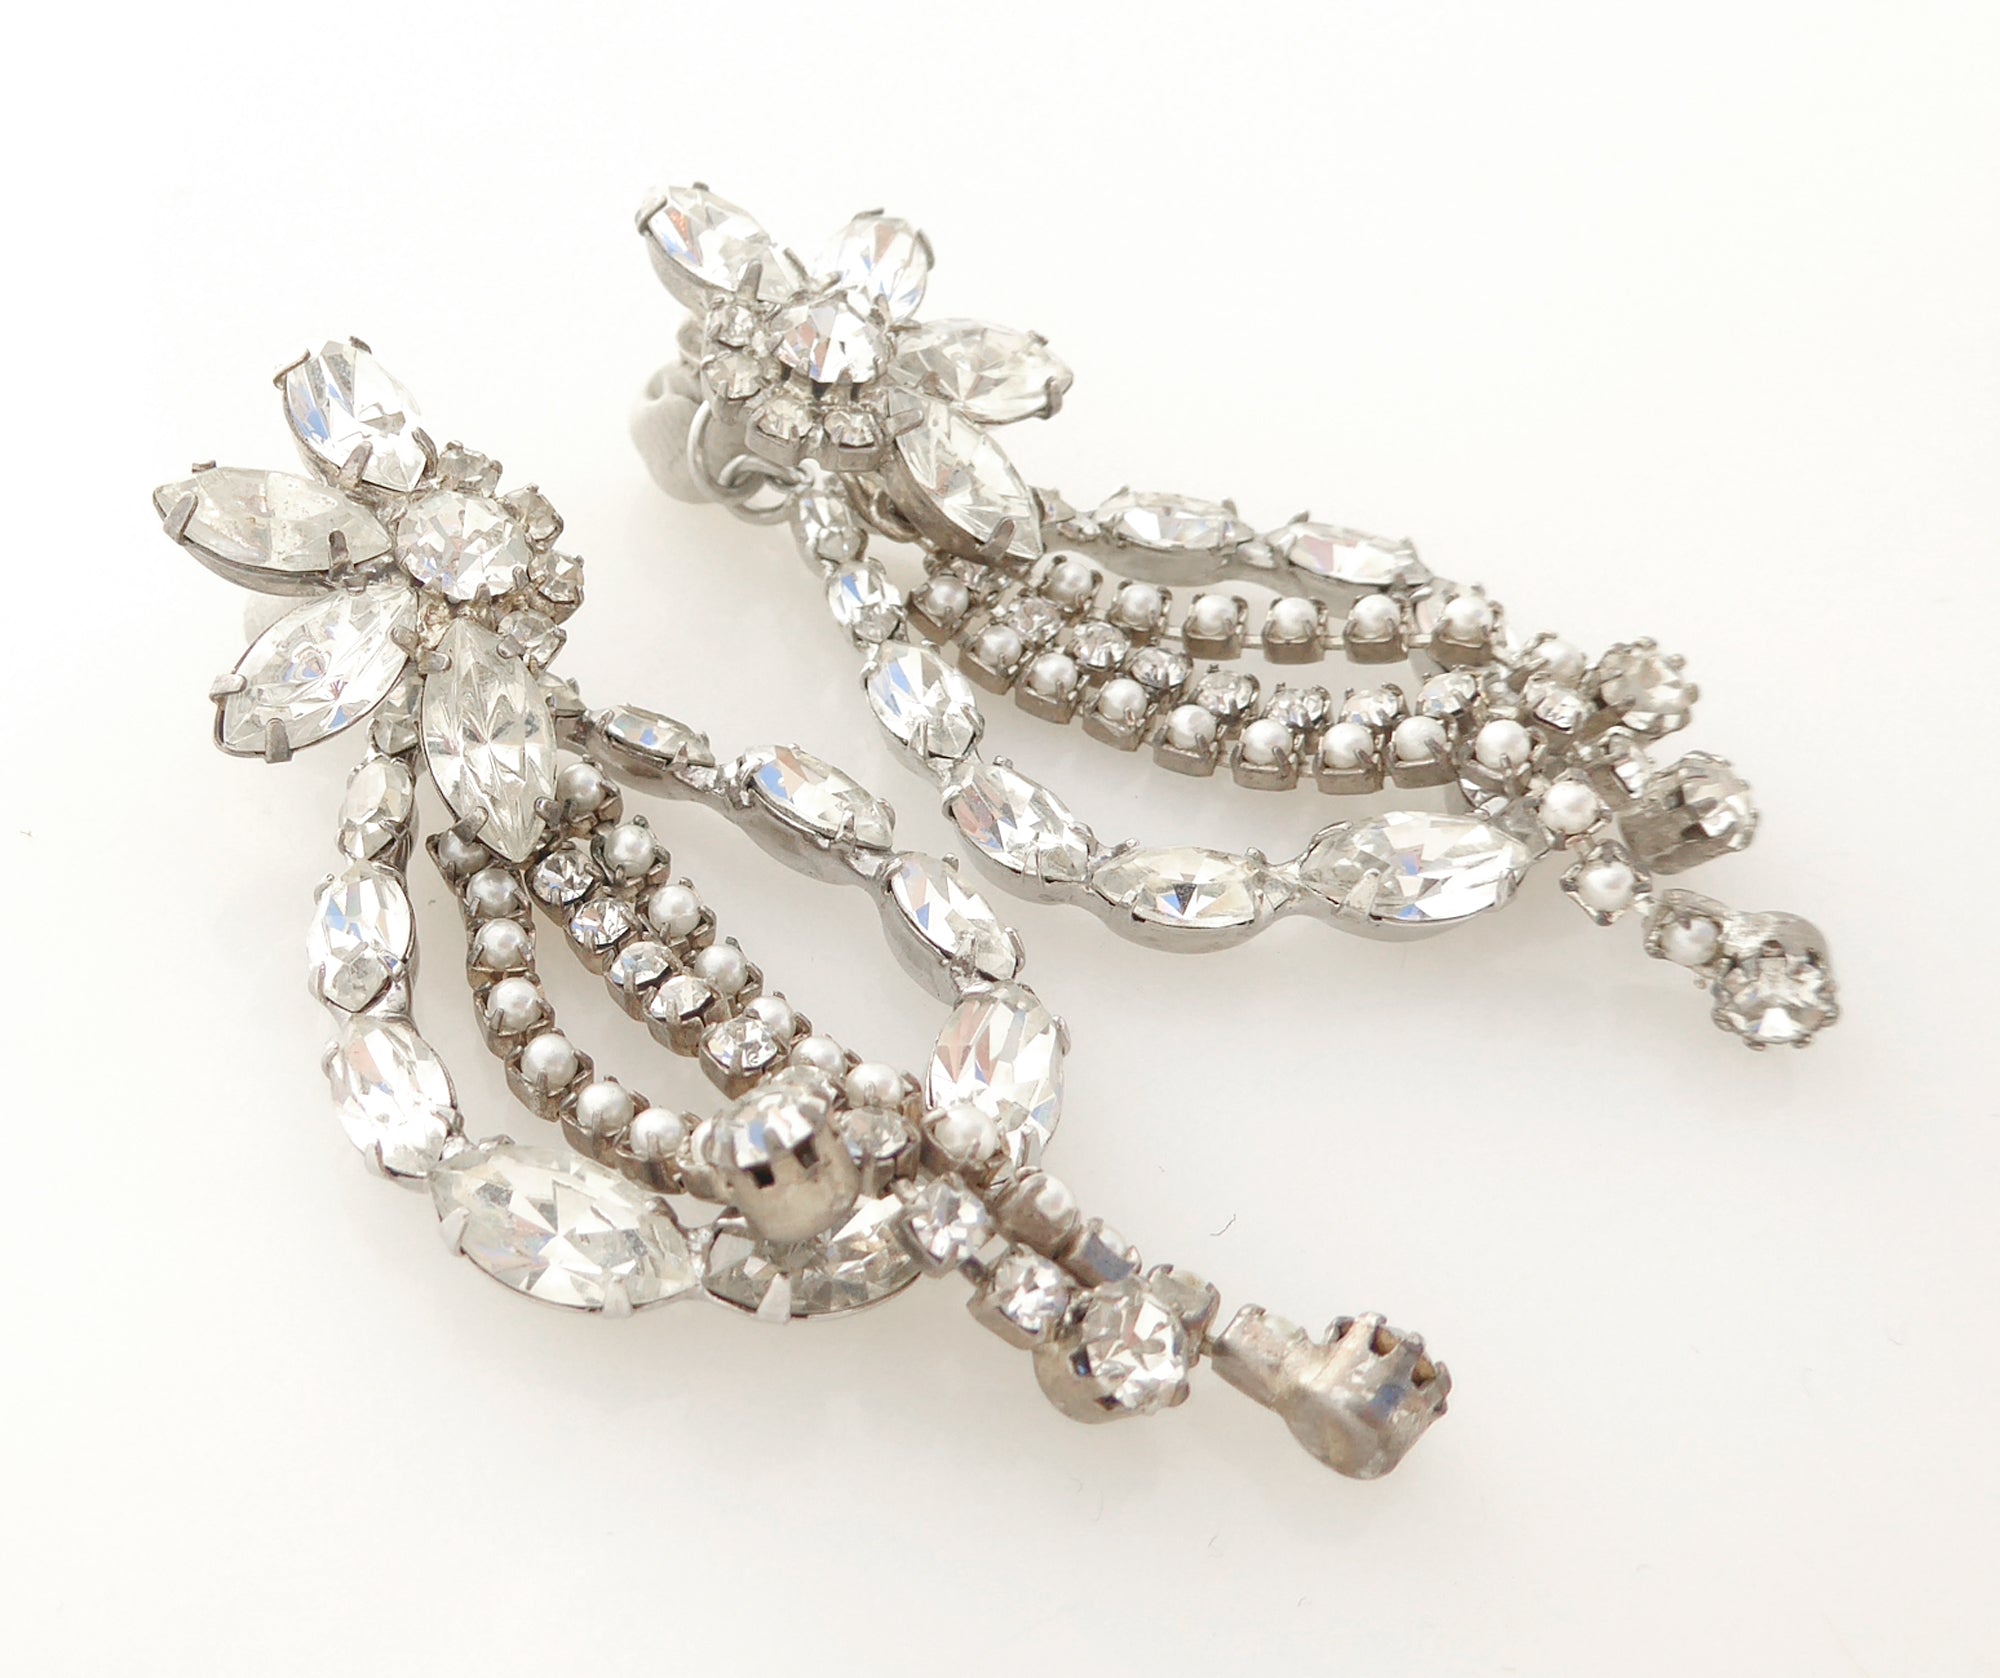 Silver rhinestone flower and teardrop earrings by Jenny Dayco 2